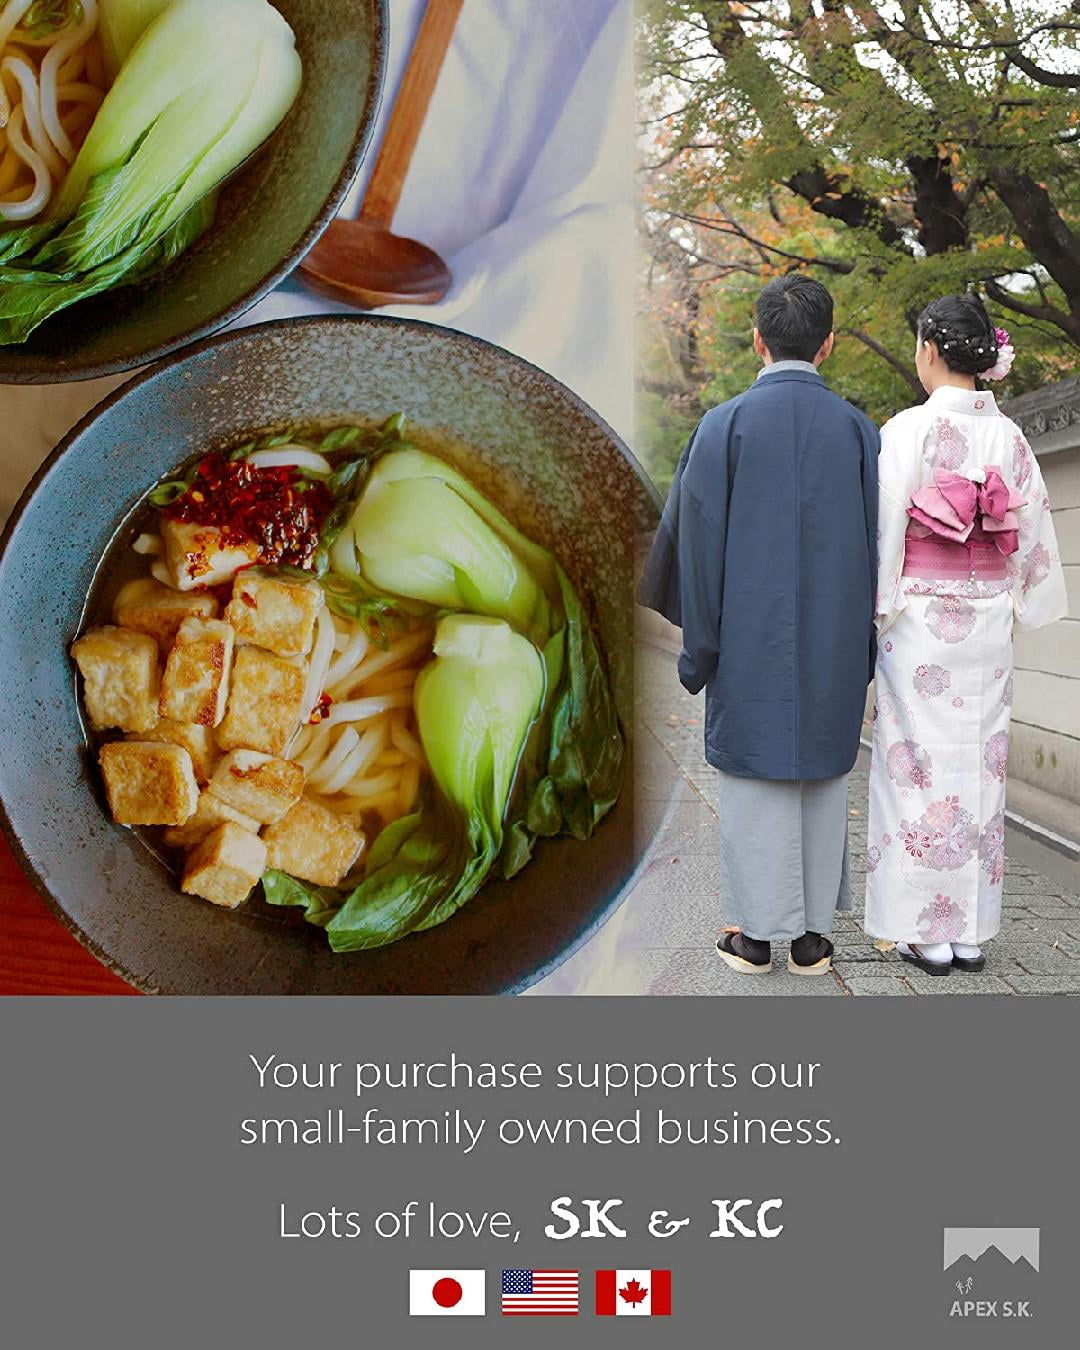 2pcs Snack Bowl with Handle Korean Ramen Pot Asian Dressing Topersitos Para  Comida Korean Soup Bowls